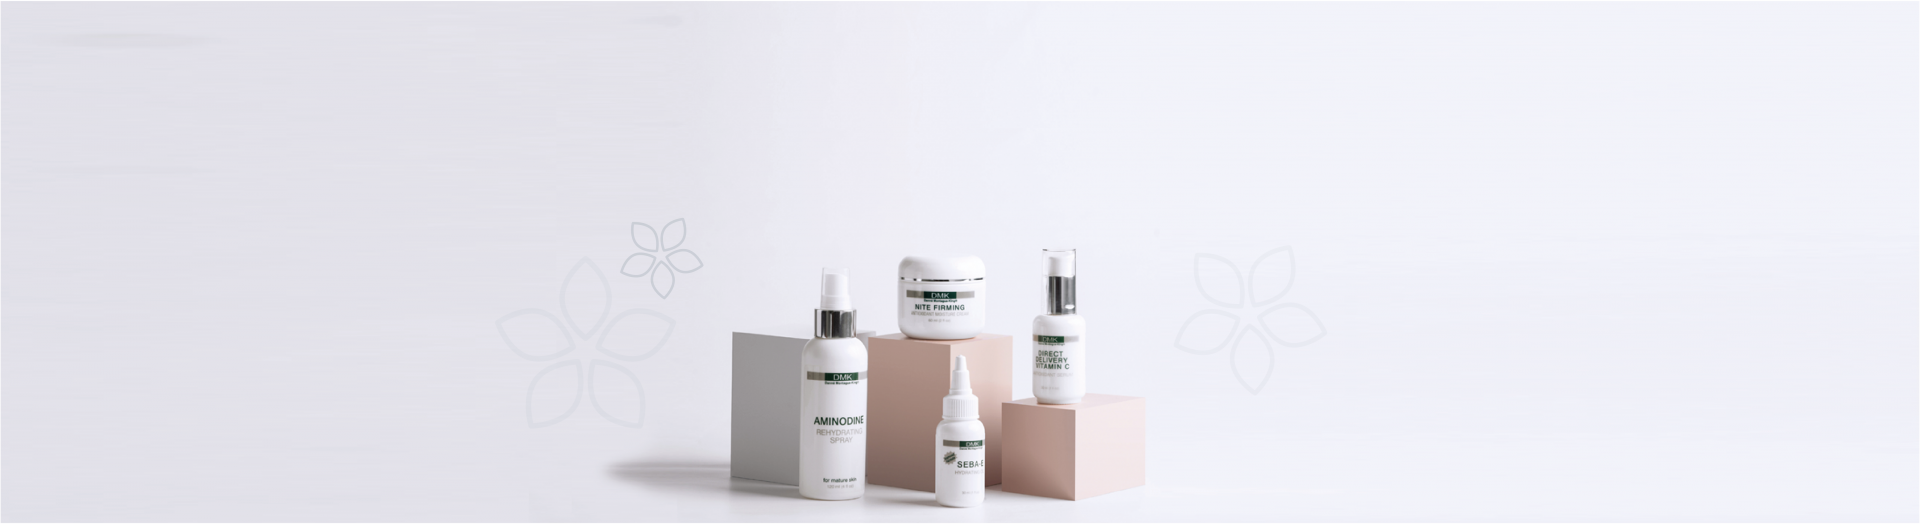 Sasi Skin Spa Sasi-Products-Hero-e1592260987647 Products  